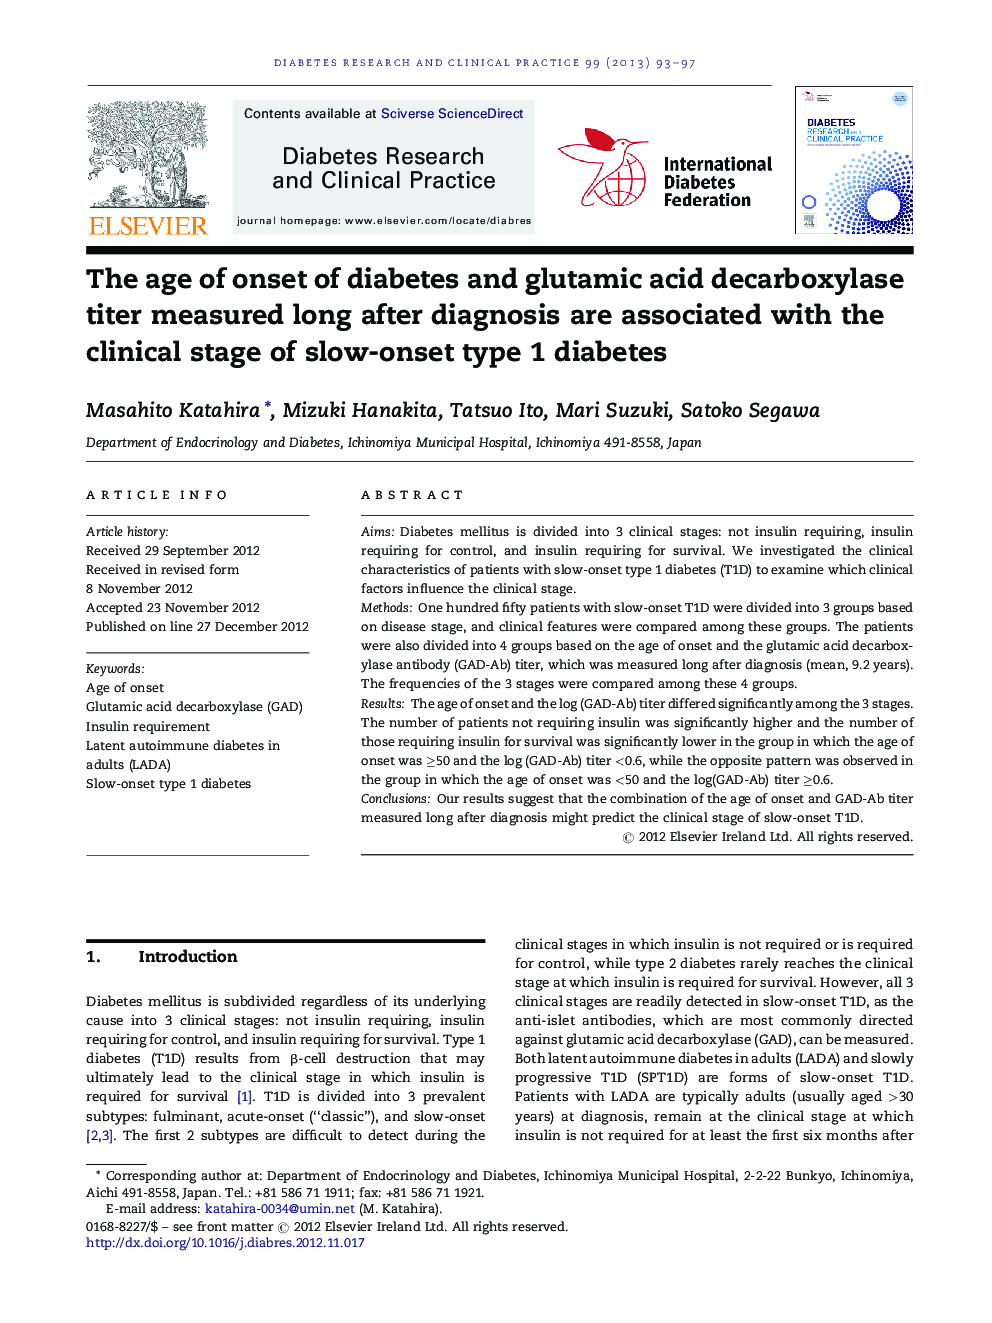 سن ابتلا به دیابت و تری گلیسیرید اسید دکربوکسیلاز اندازه گیری طولانی پس از تشخیص همراه با مرحله بالینی دیابت نوع 1 به آرامی آغاز می شود 